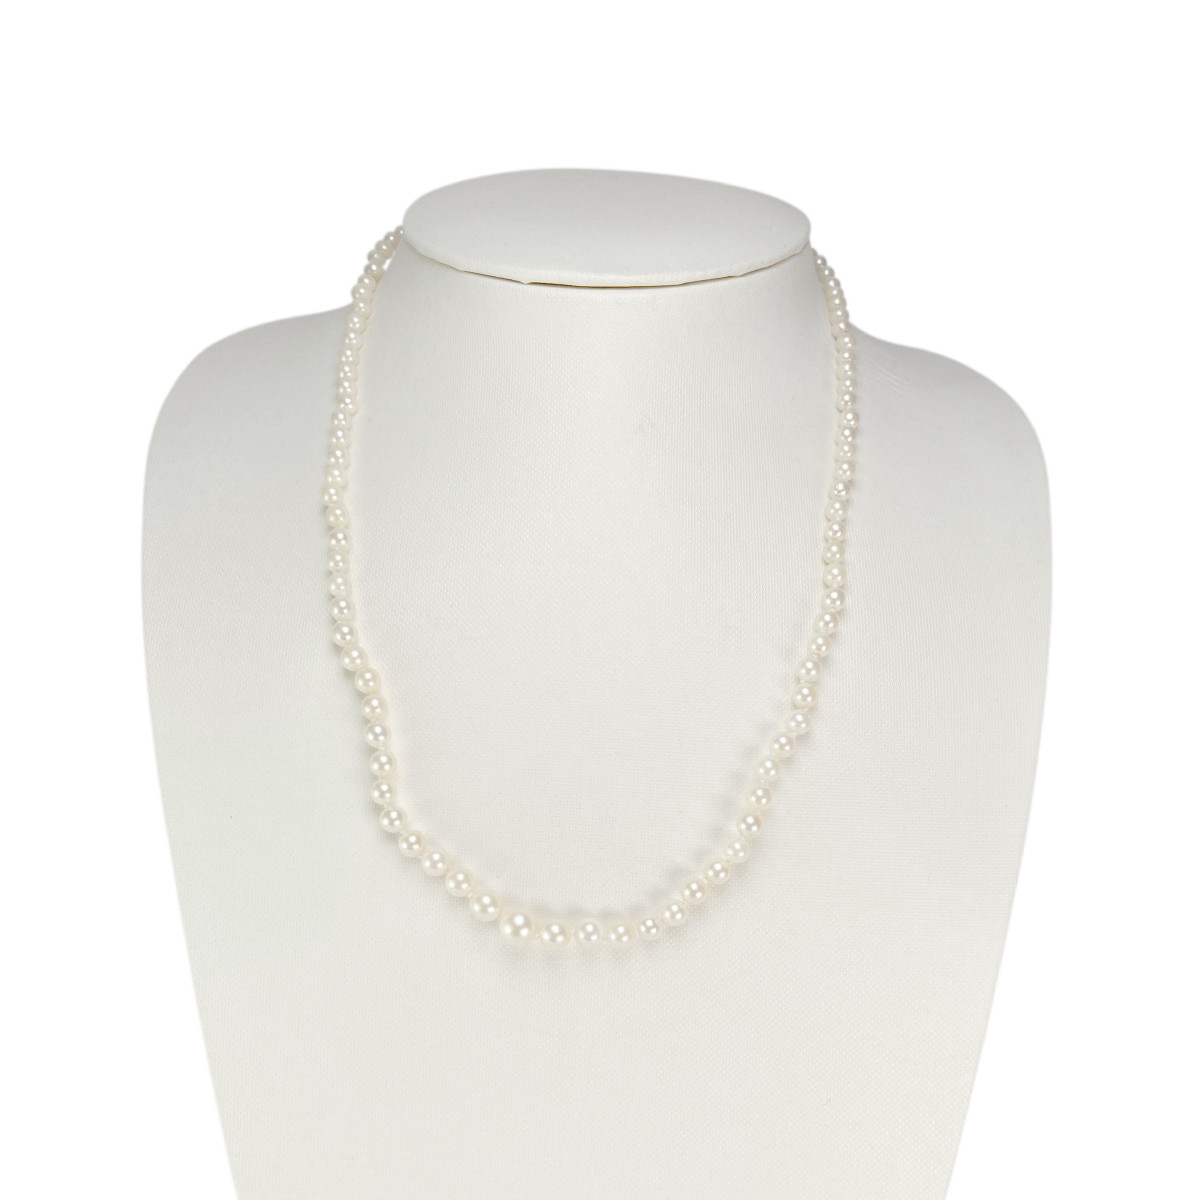 Collier en chute d'occasion or 750 blanc perles du japon 50 cm - vue 2